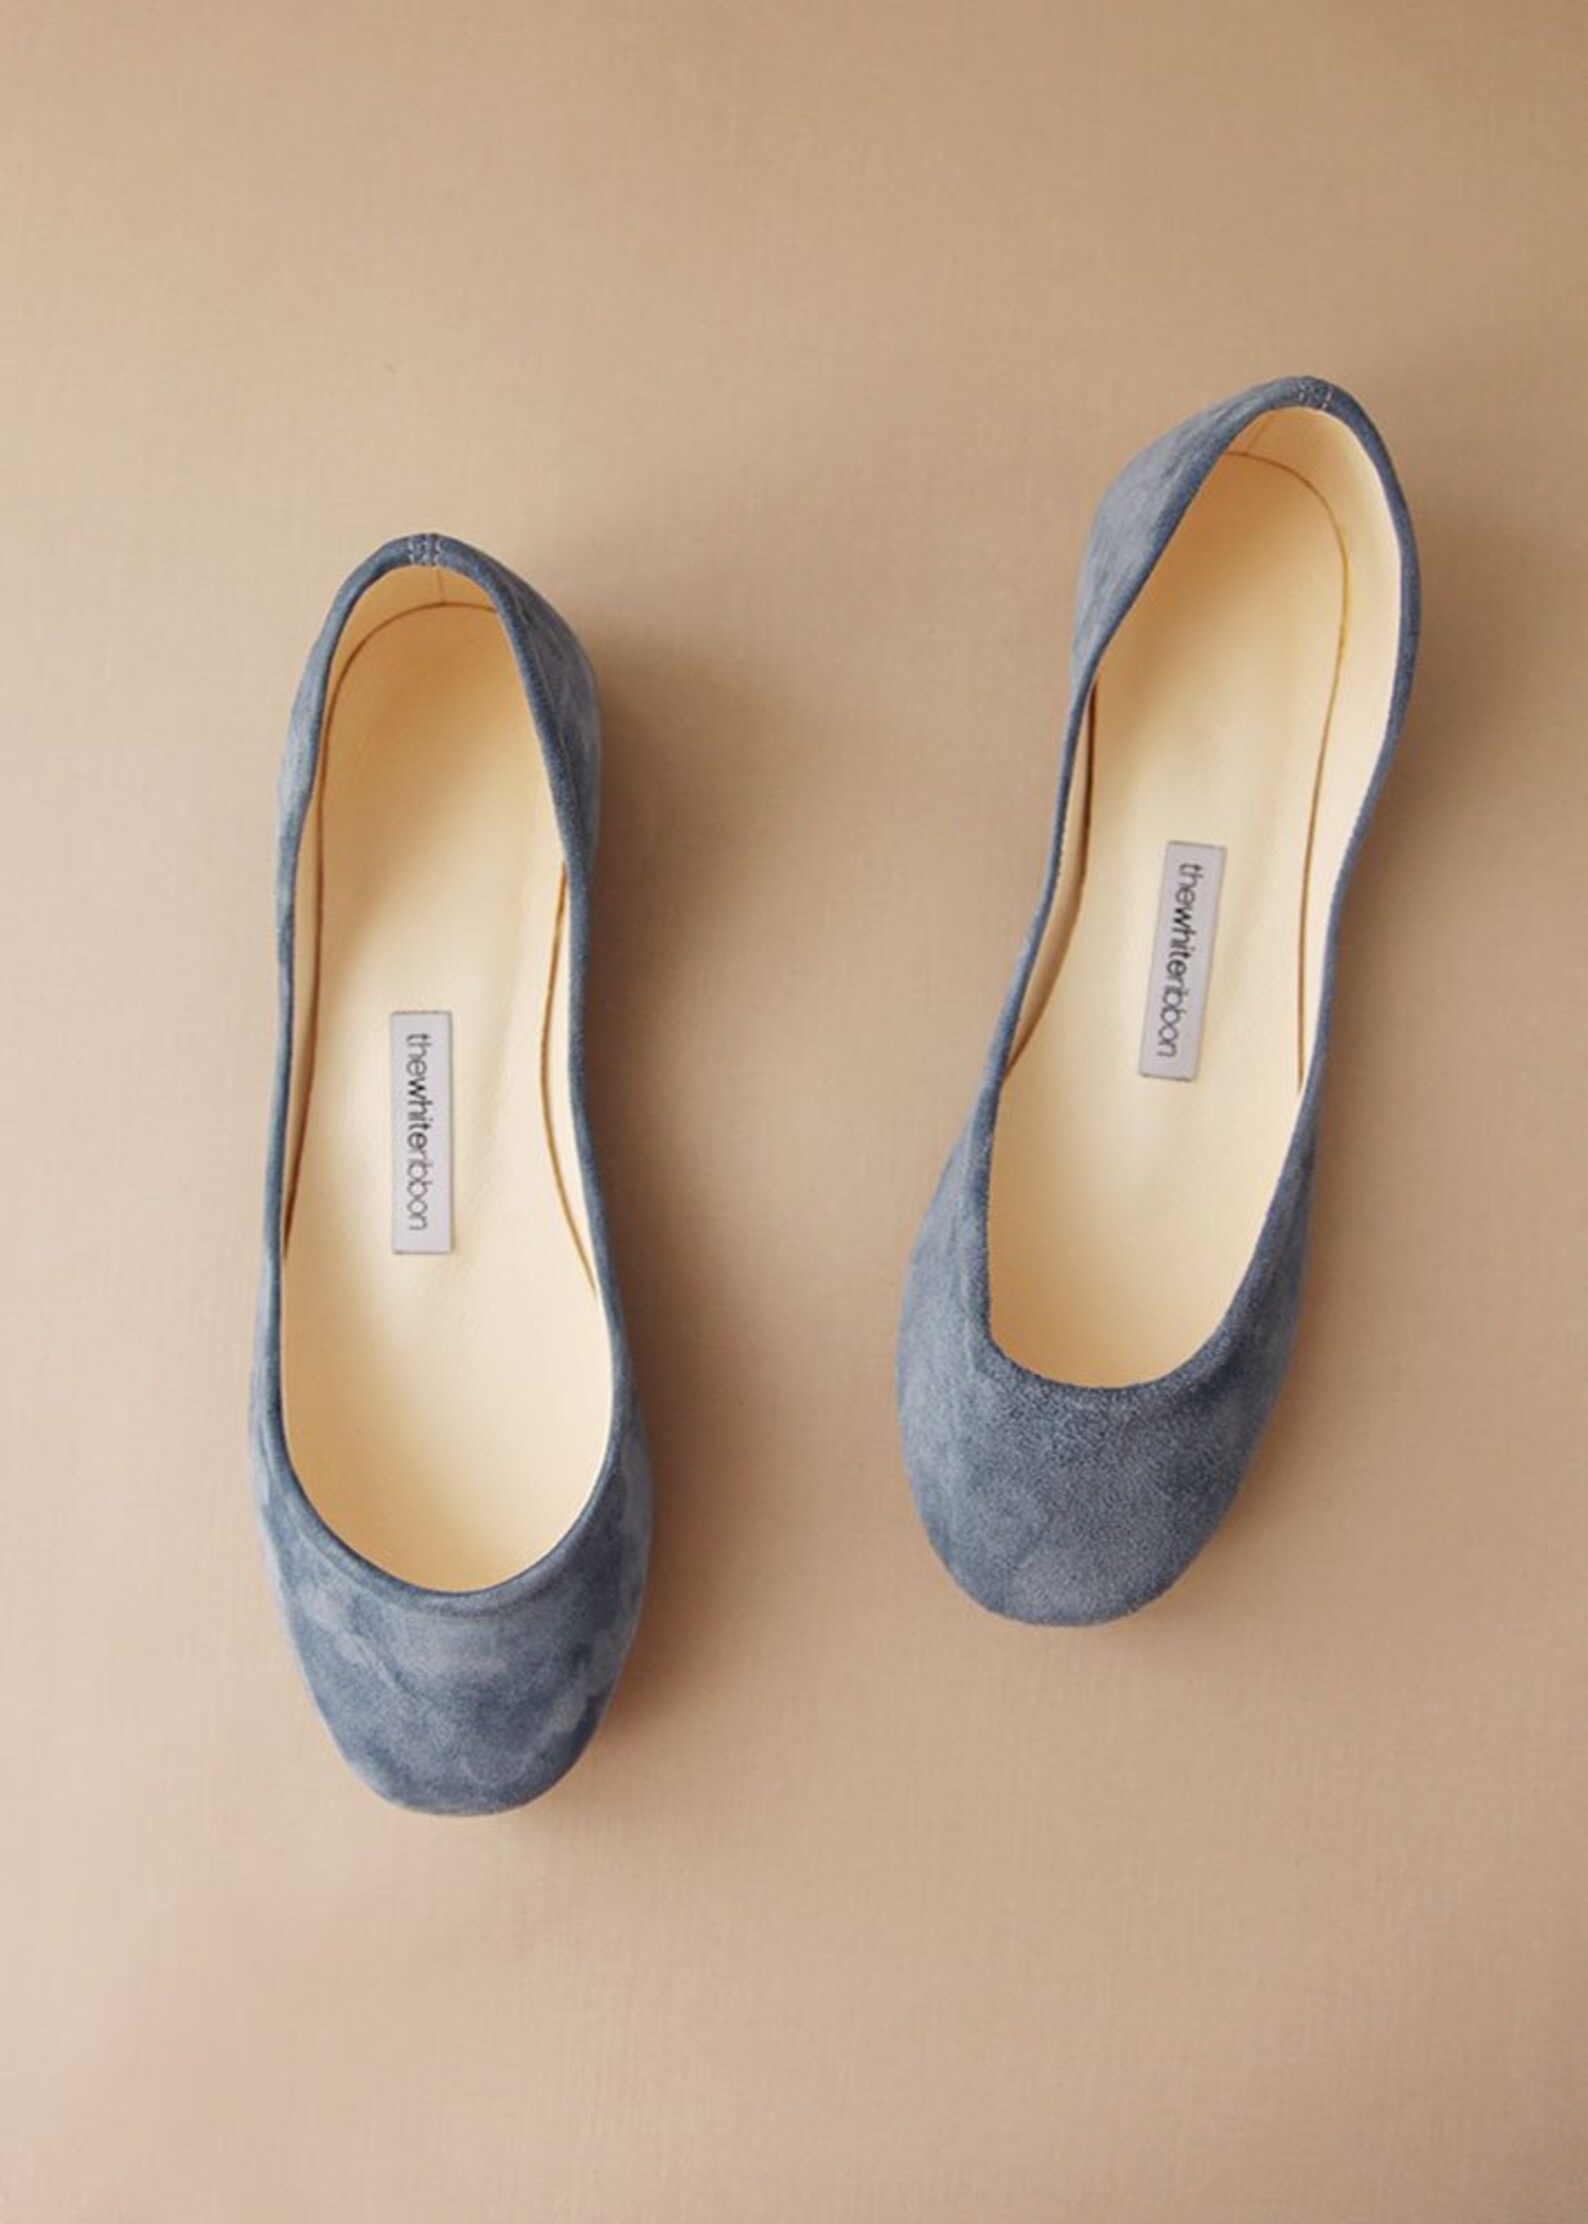 pastel blue suede ballet flats | minimalist suede leather shoes | blue leather shoes ballerina style shoes flats low heel | past